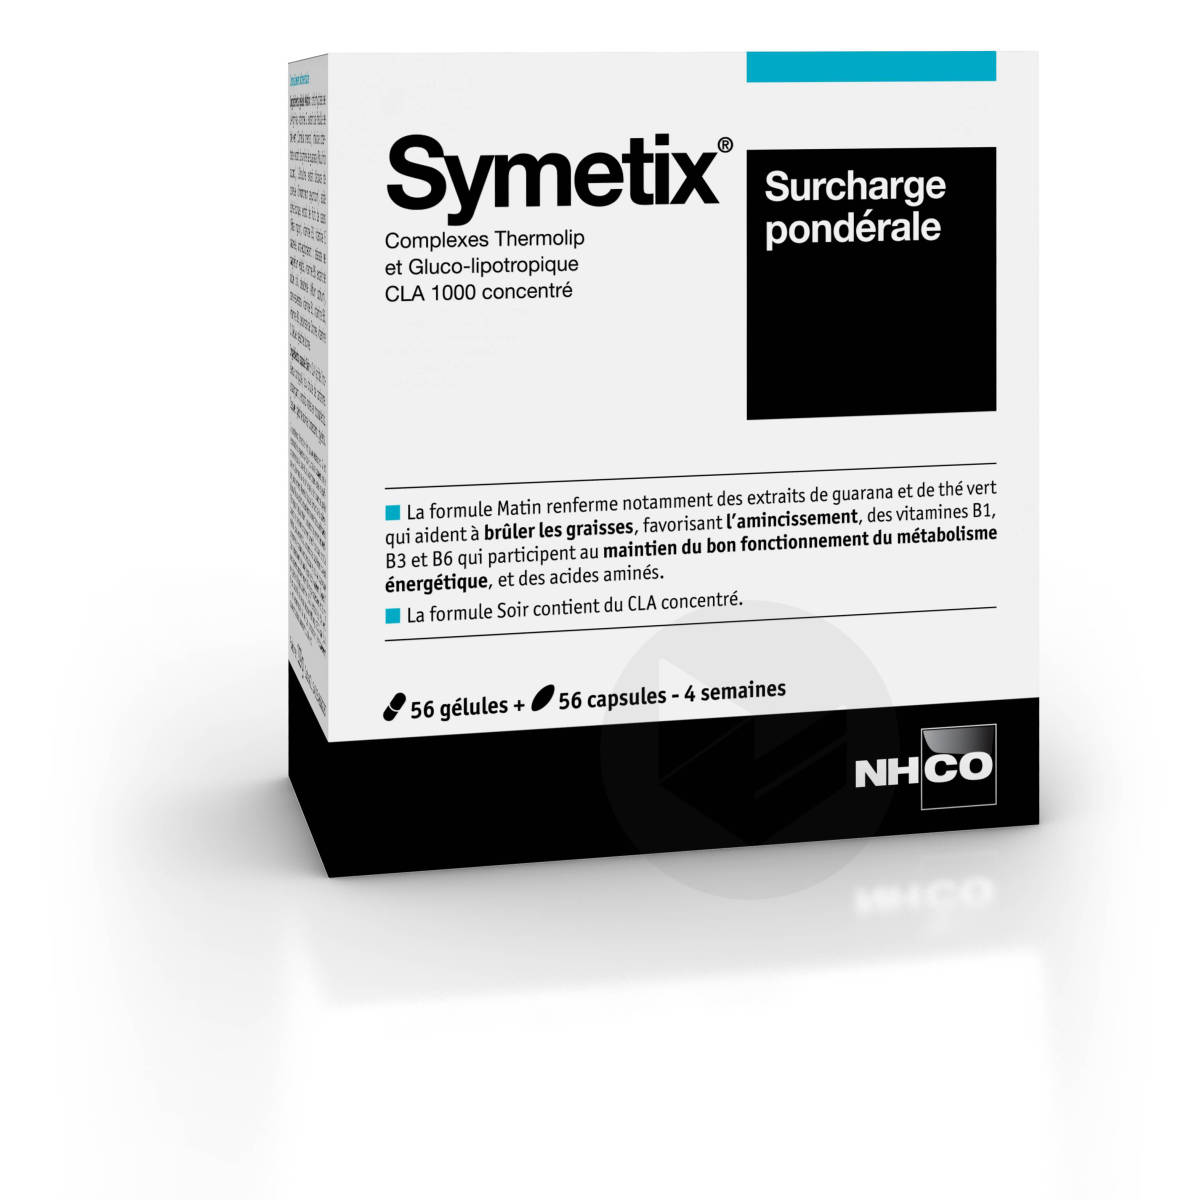 Symetix 56 Gélules + 56 capsules